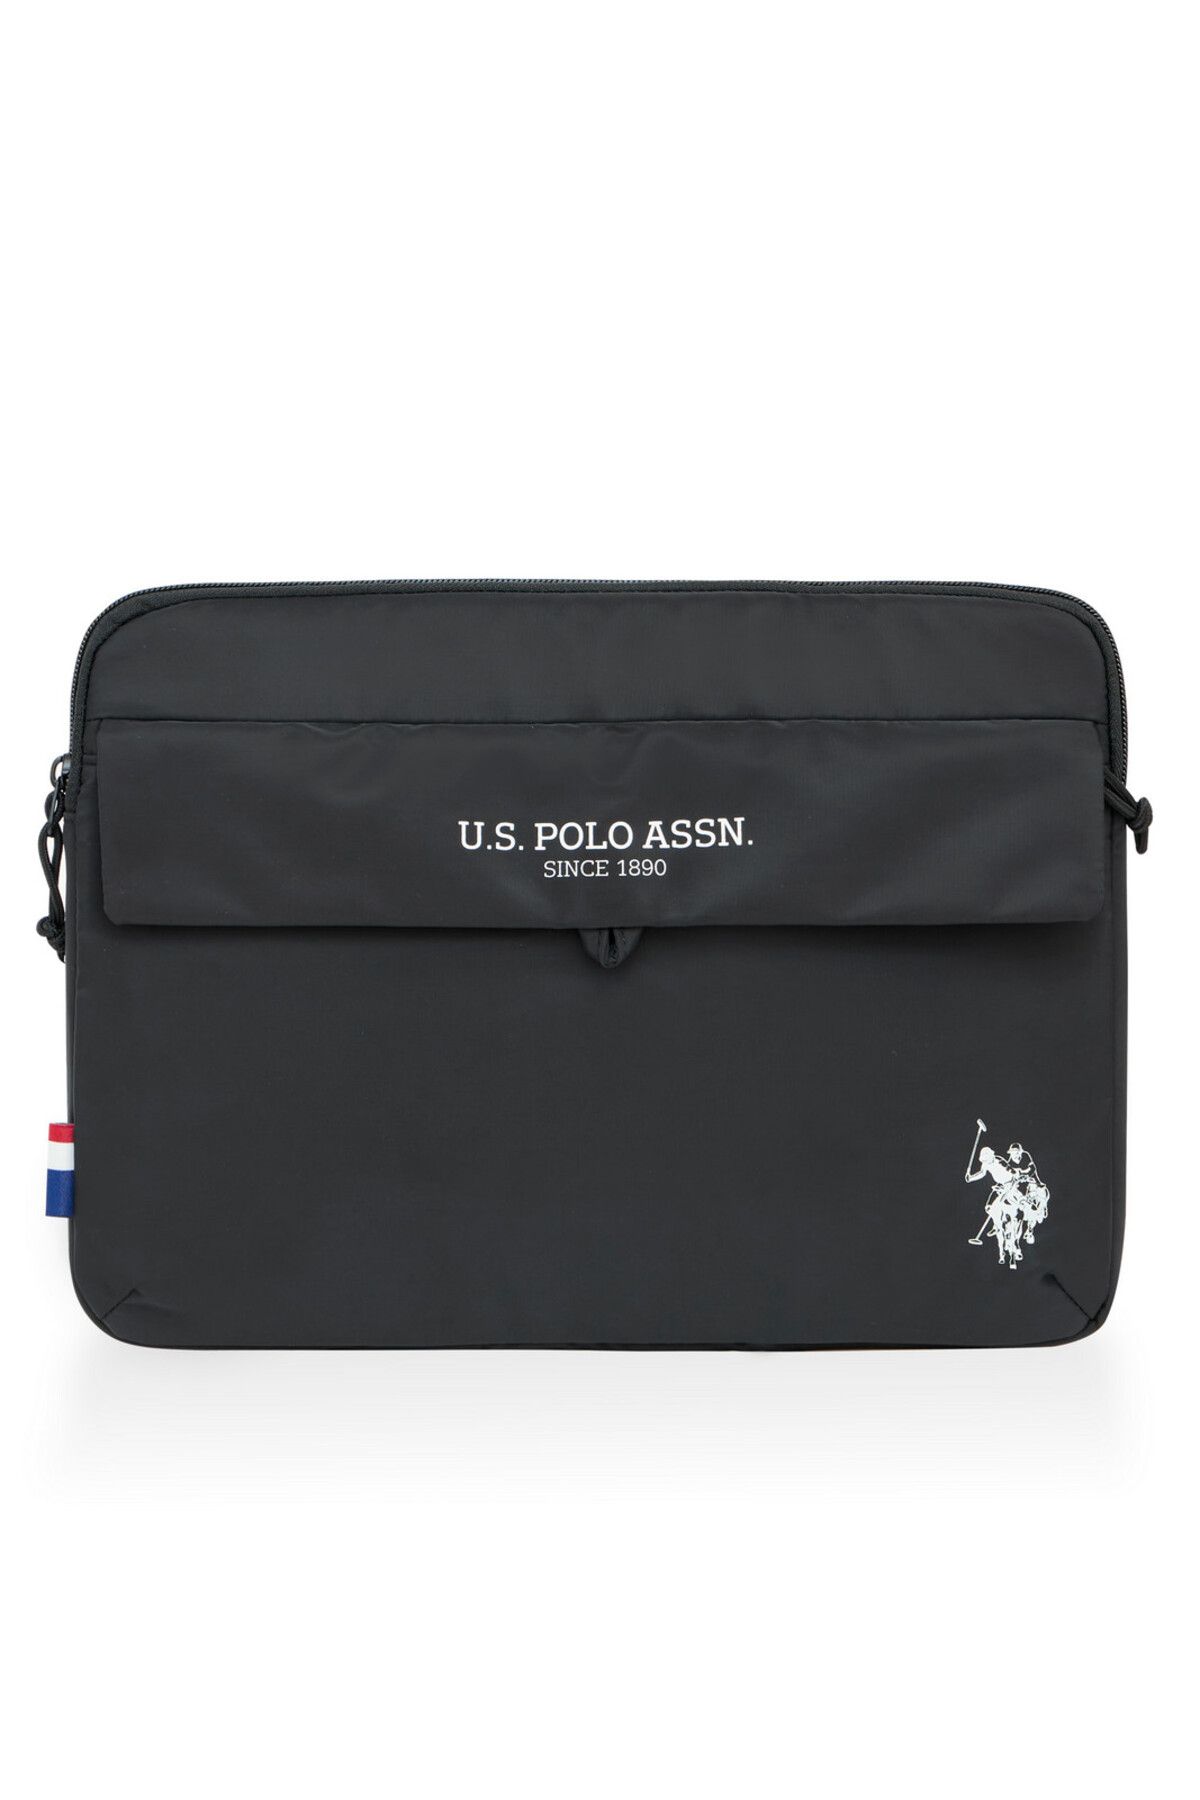 U.S. Polo Assn. U.S. Polo Assn. 23685 Unisex Laptop Bölmeli Evrak Çantası SİYAH